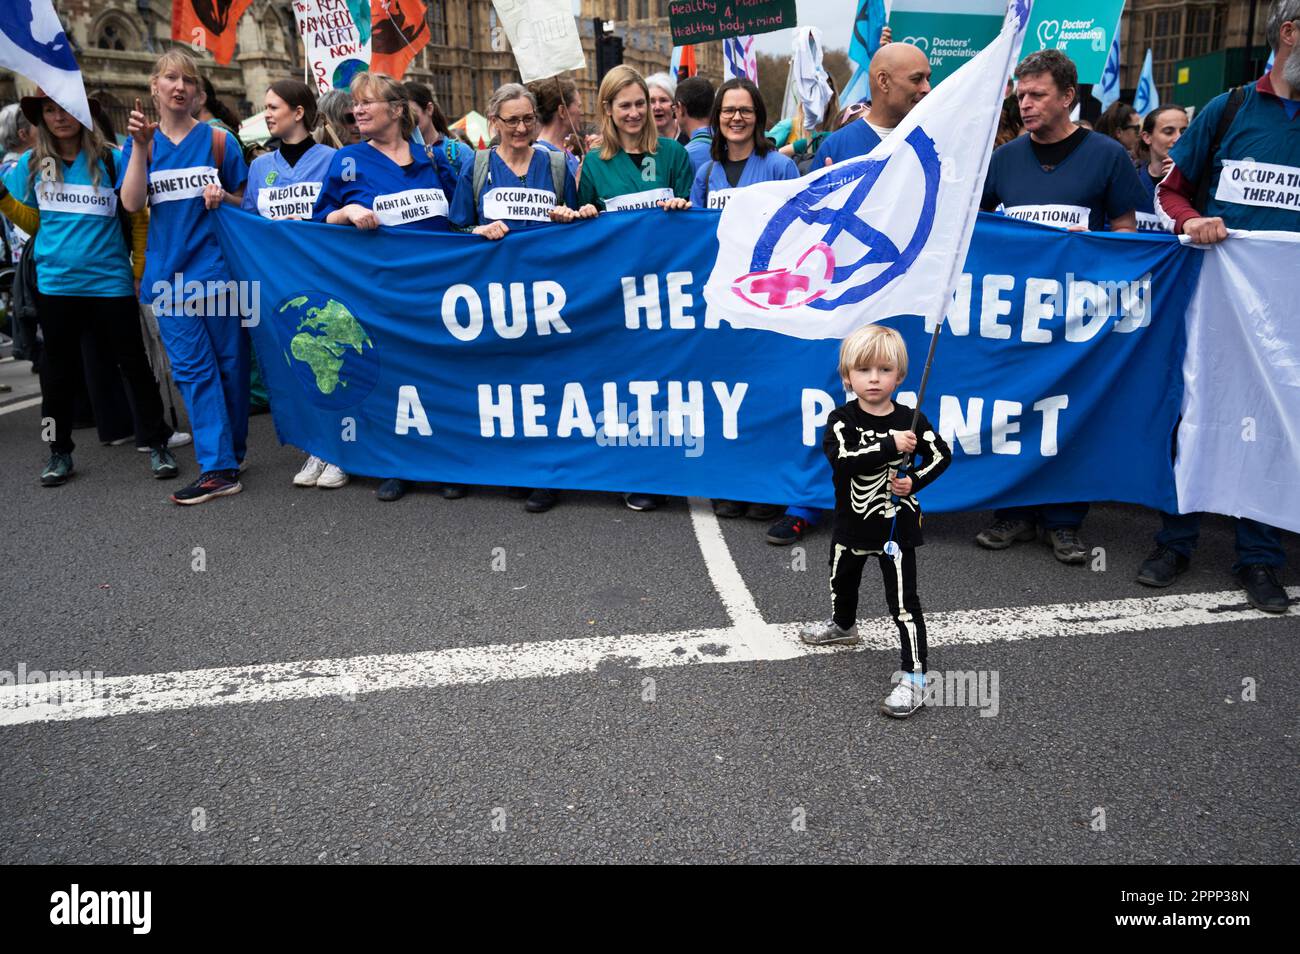 Le jour de la Terre, des militants de toute la Grande-Bretagne se sont réunis sur la place du Parlement pour exiger que le gouvernement agisse davantage face au changement climatique. Travailleurs de la santé. Banque D'Images